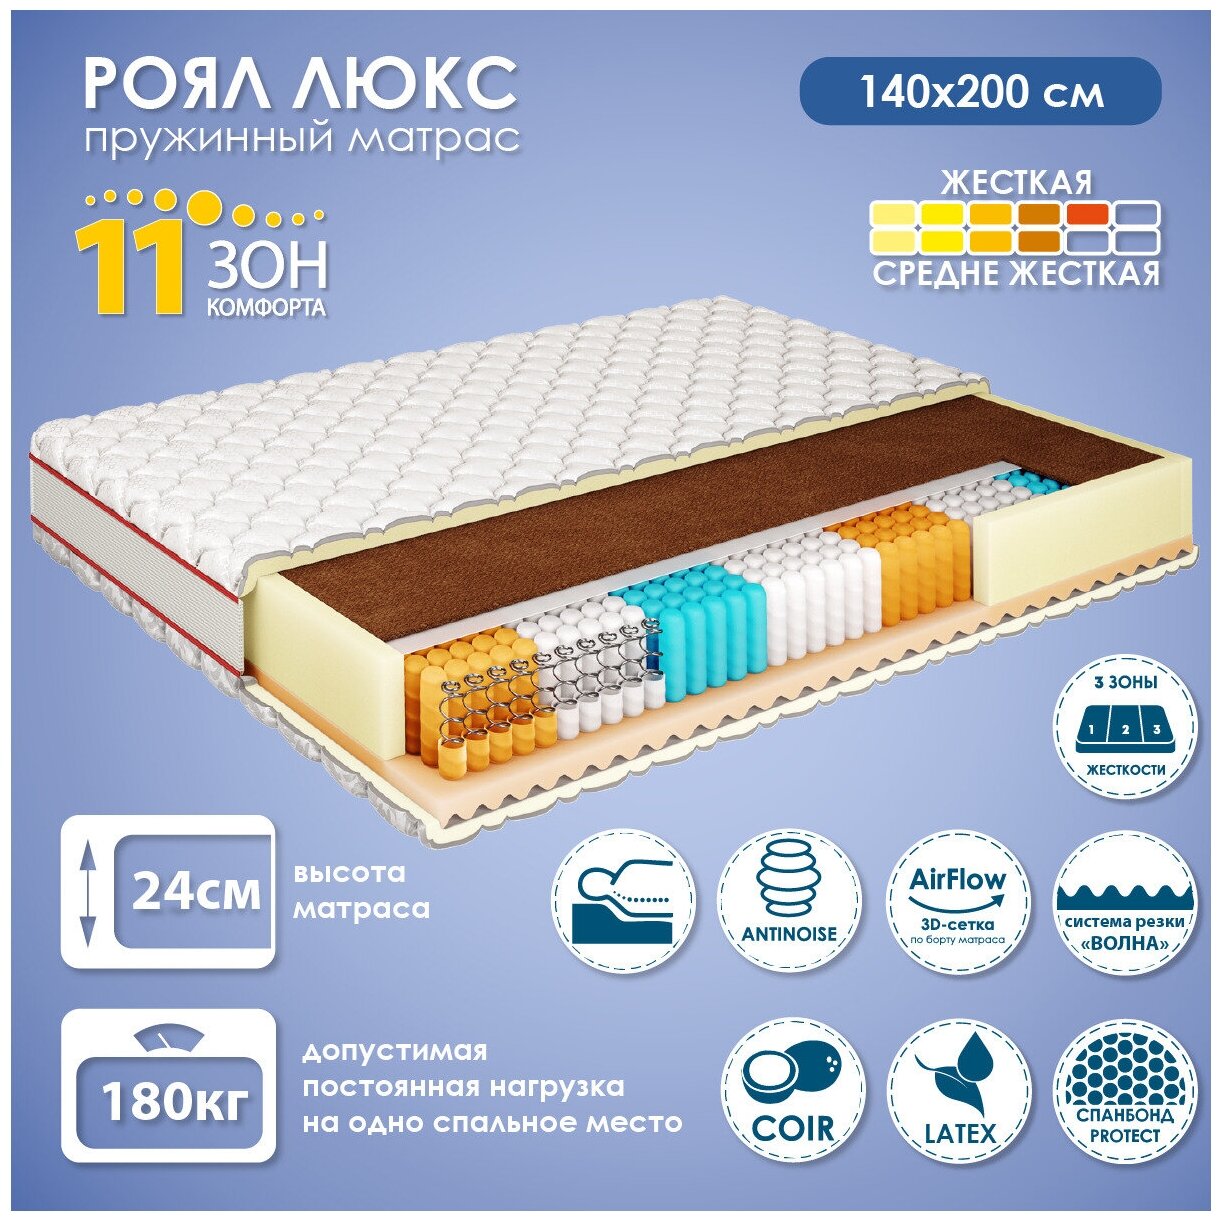 Матрас для кровати 140х200 см Роял Люкс, независимый пружинный блок, 11 зон комфорта, 24 см высота, в развернутом виде, АМИ мебель, Беларусь